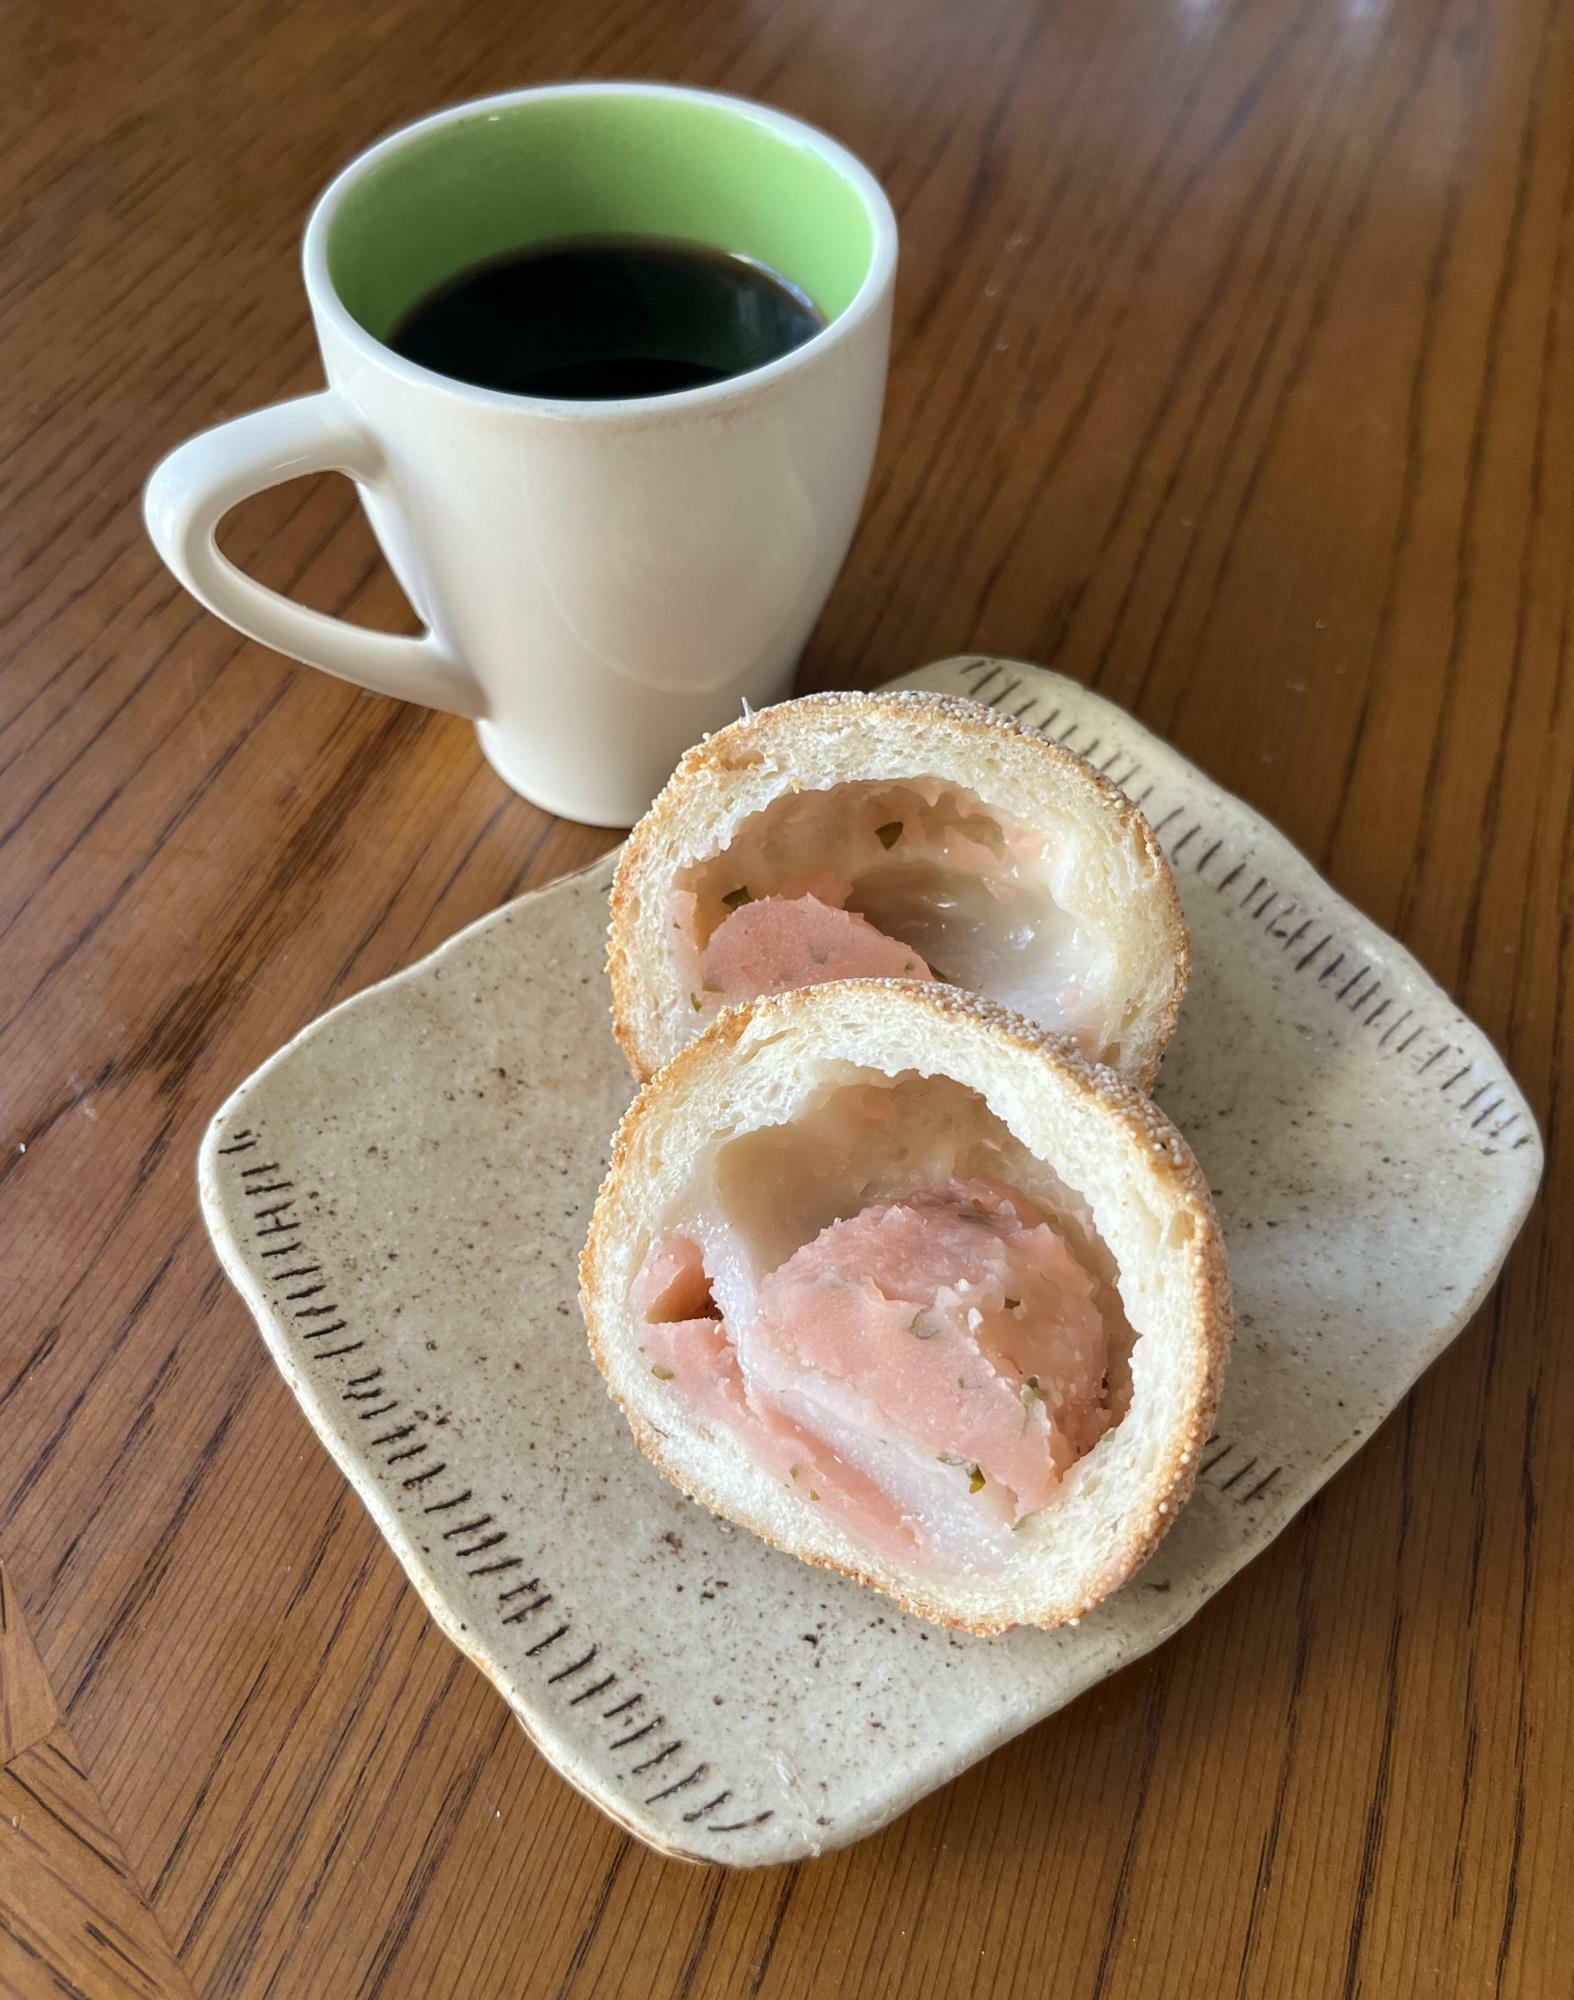 北海道産の餅粉を使用したオリジナルミニ餅とさくらあんを包んだあんぱん。まわりのケシの実の風味がほどよいアクセントになっています